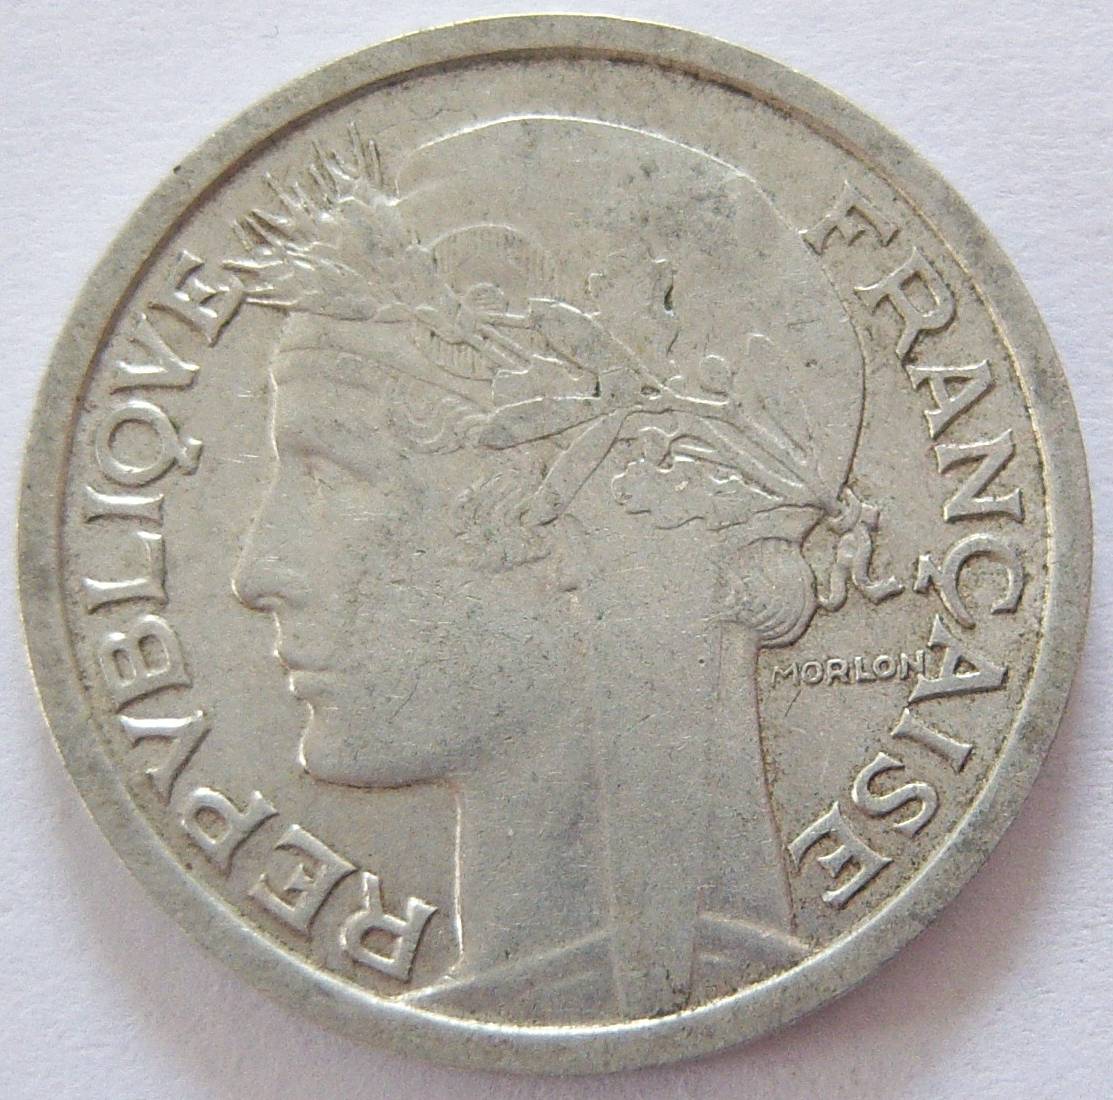  Frankreich 1 Franc 1946   